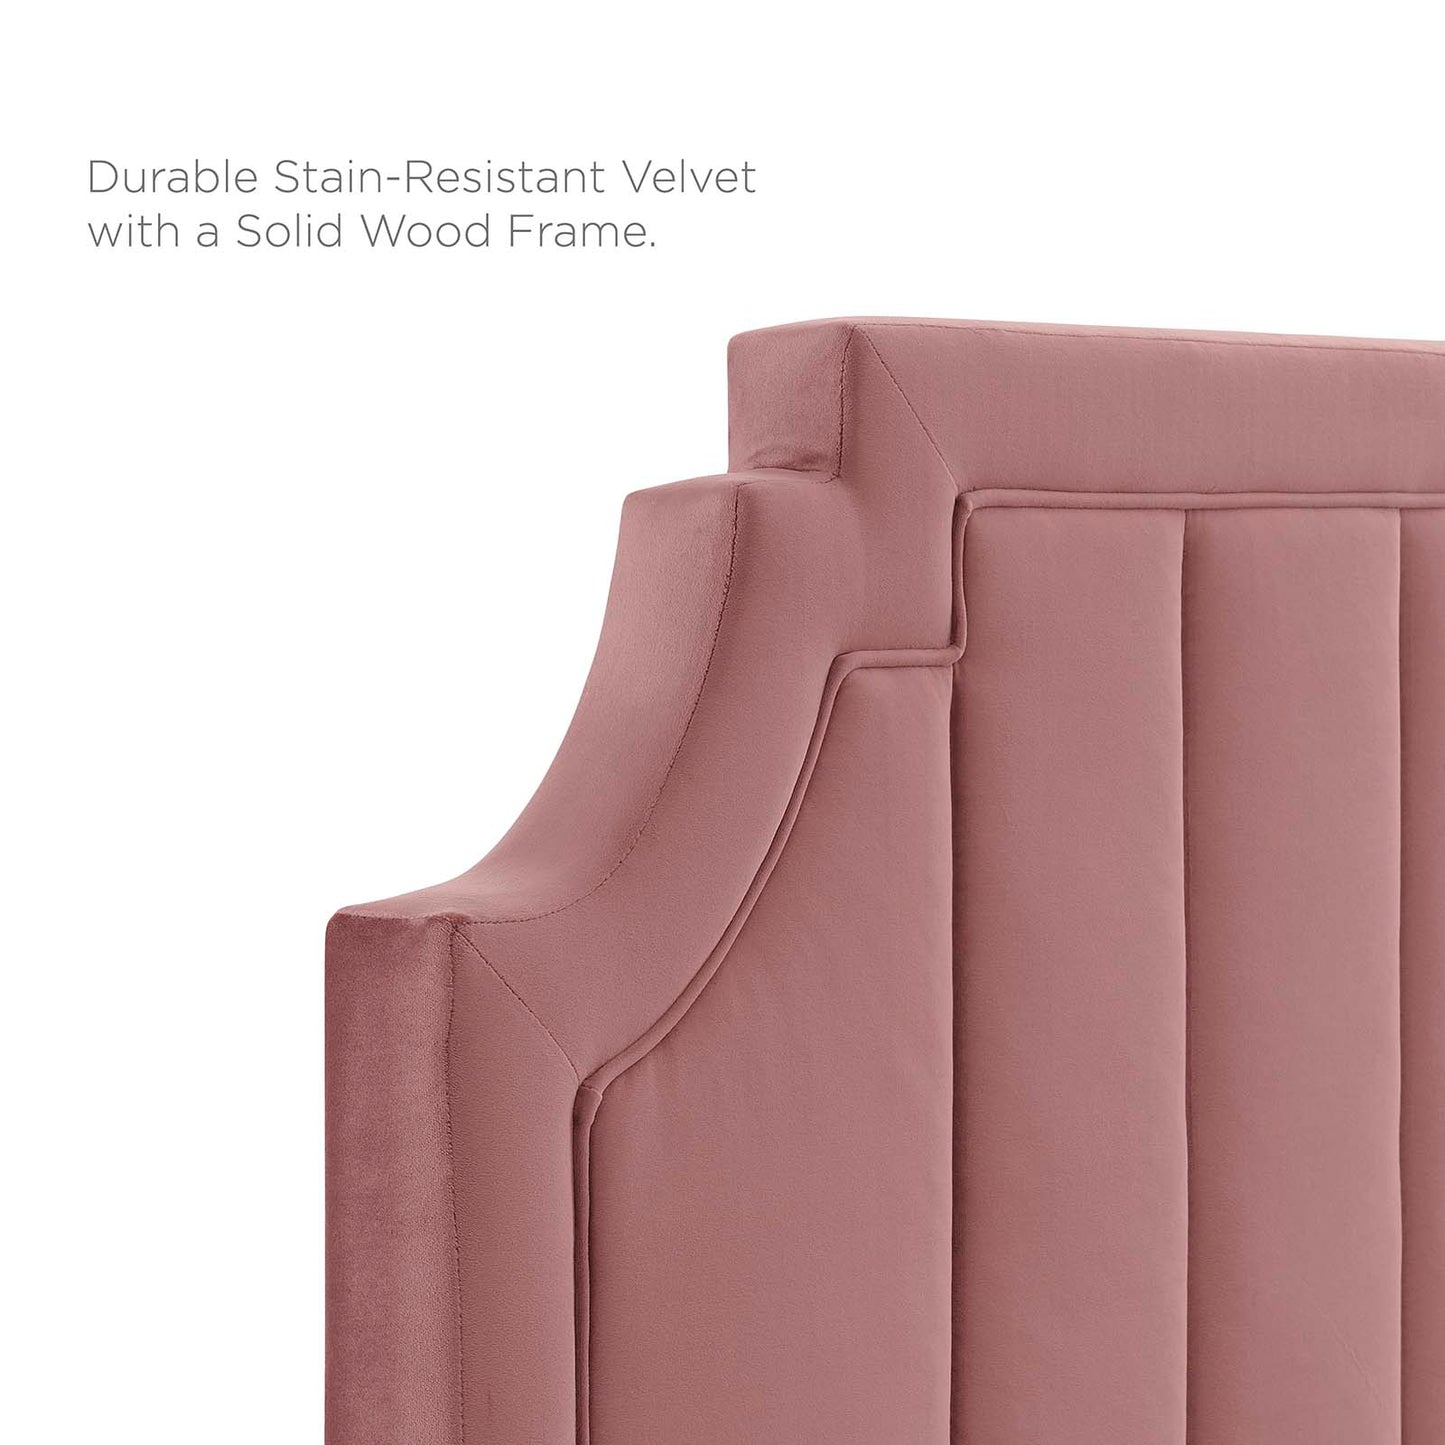 Sienna Performance Velvet Full Platform Bed Dusty Rose MOD-6913-DUS